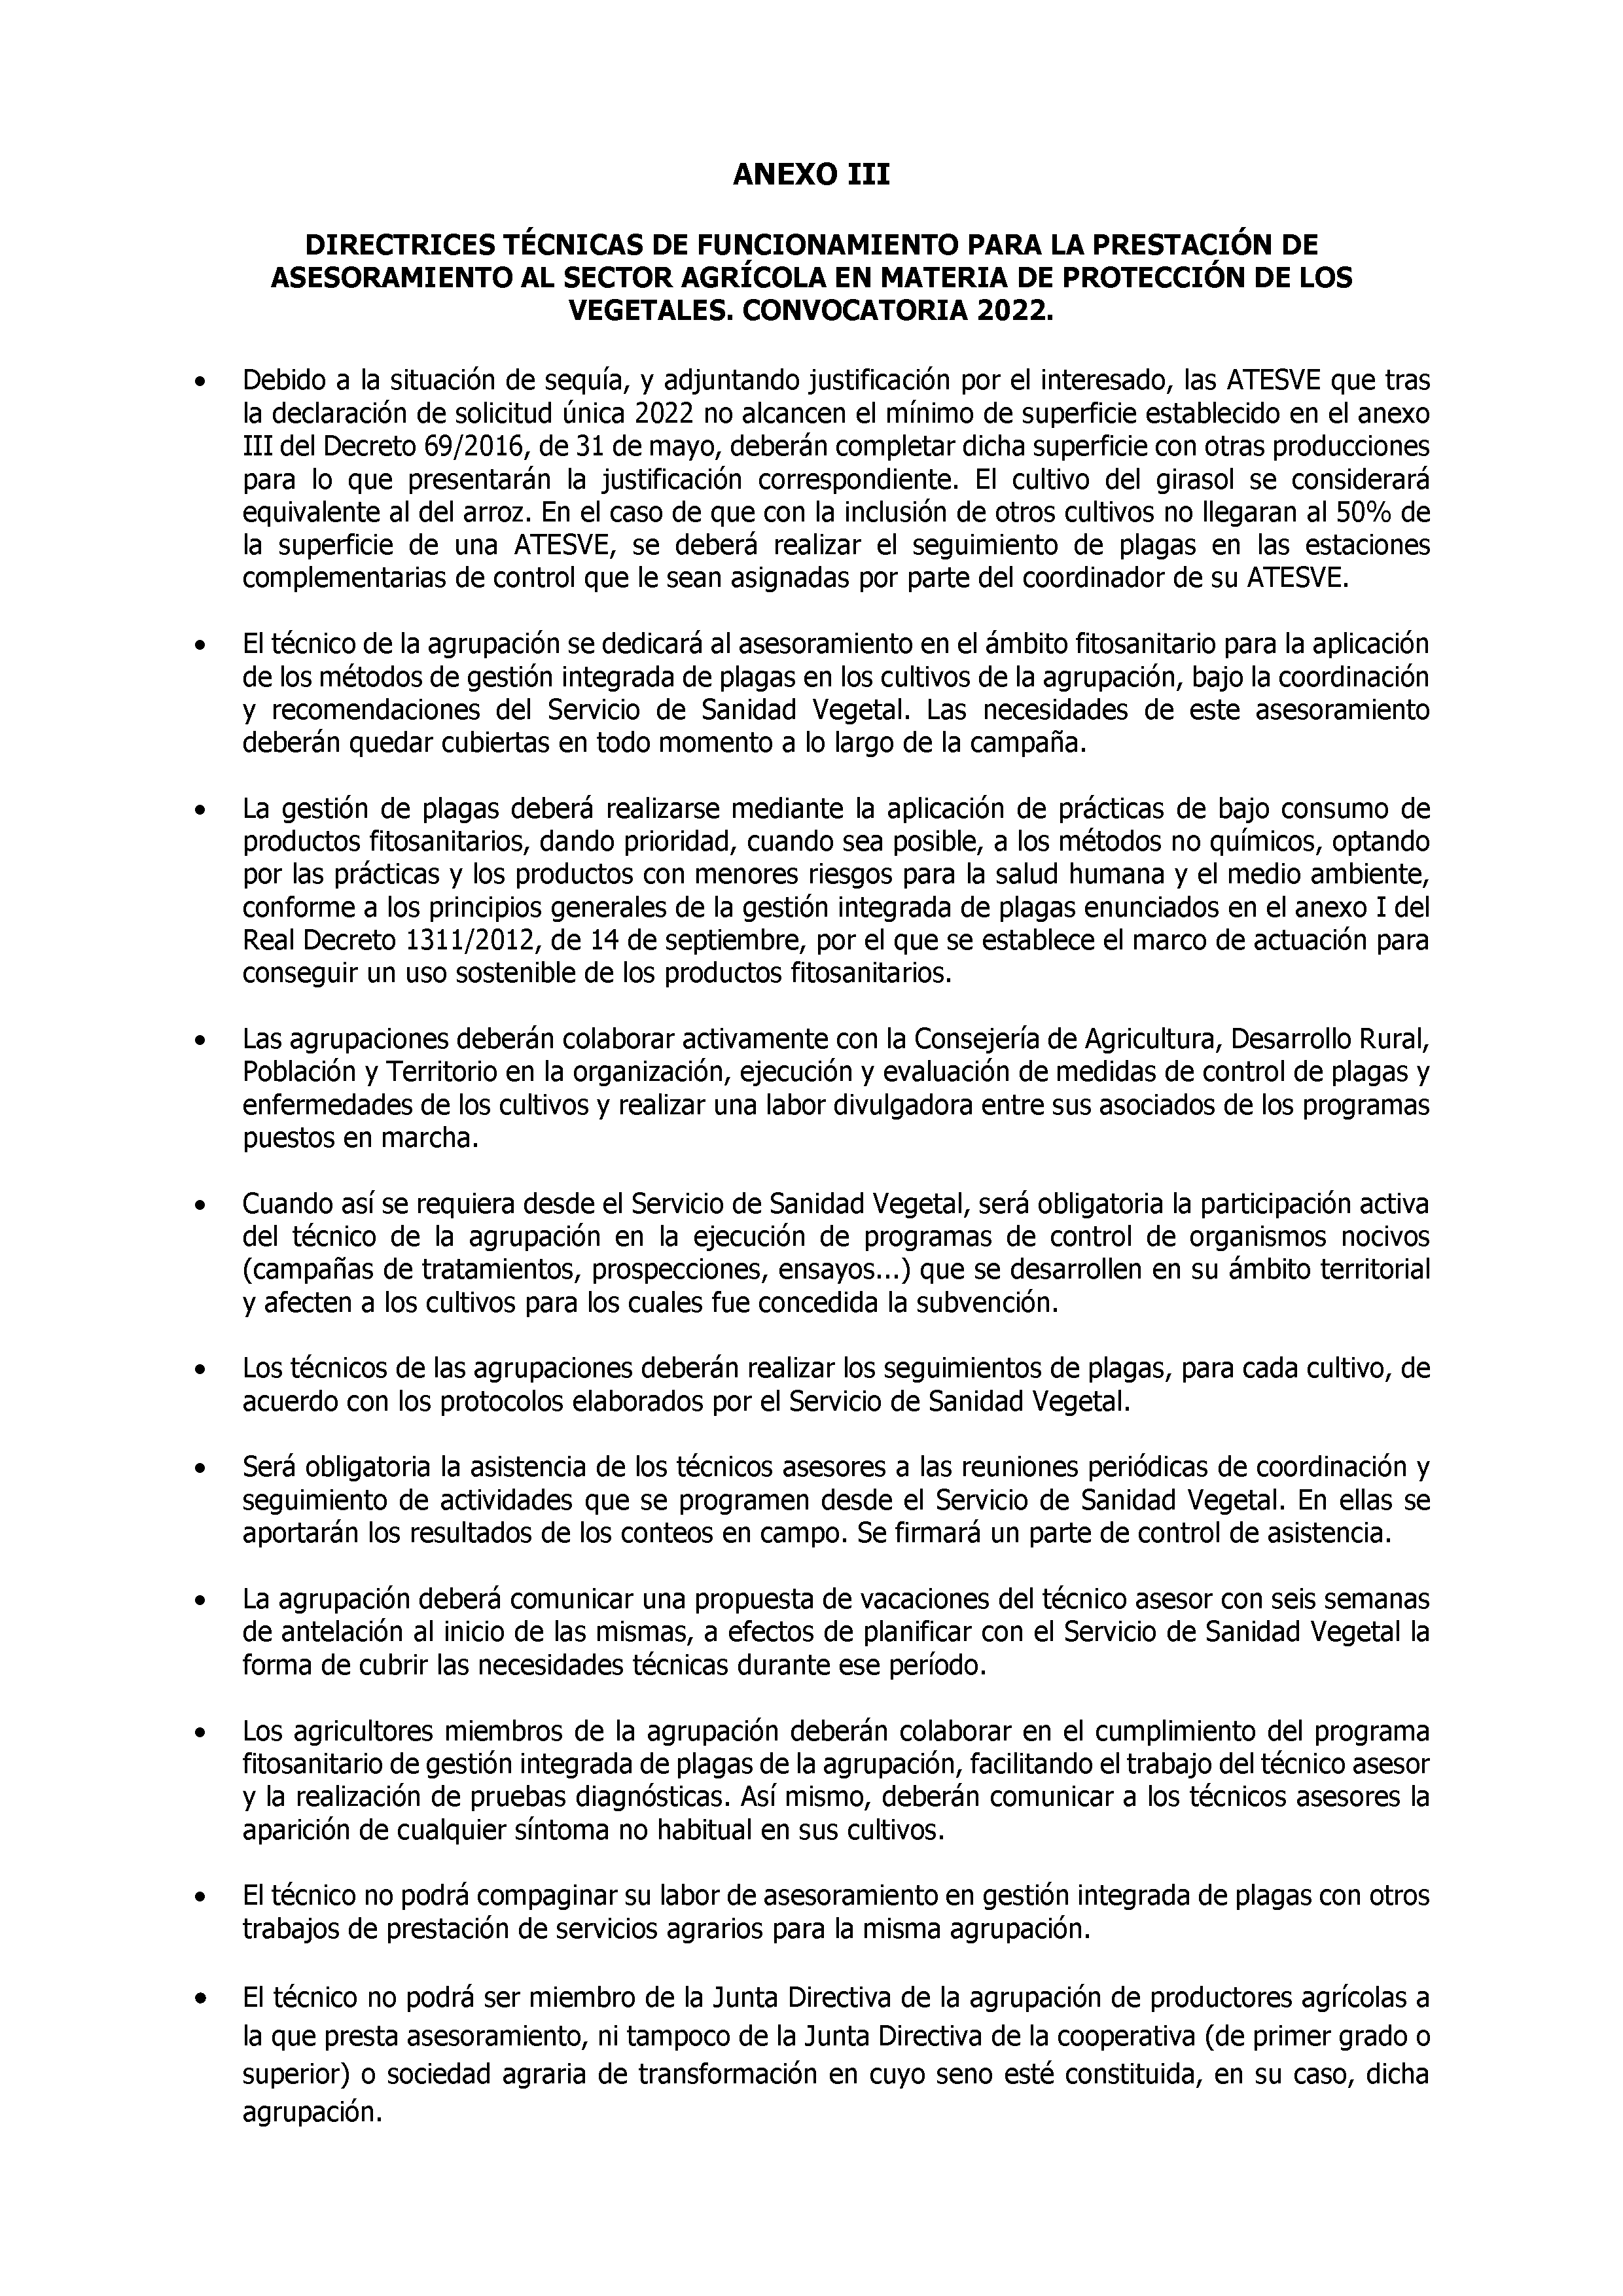 ANEXO III DIRECTRICES TECNICAS DE FUNCIONAMIENTO PARA LA PRESTACION DE ASESORAMIENTO AL SECTOR AGRICOLA EN MATERIA DE PROTECCION DE LOS VEGETALES Pag 7